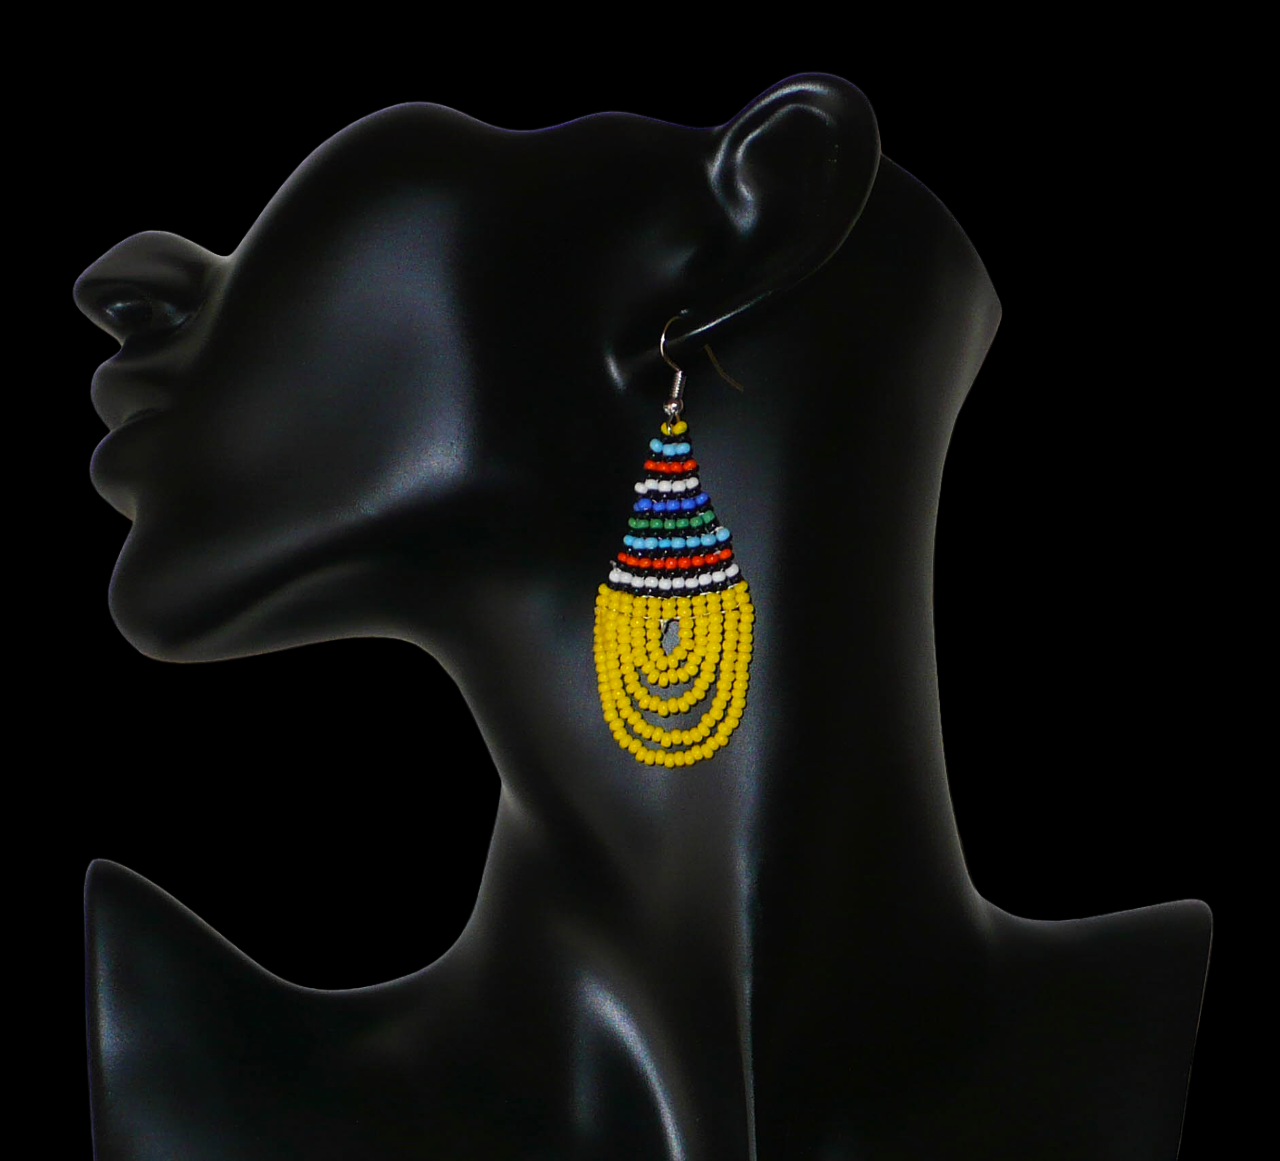 Boucles d'oreilles africaines traditionnelles zouloues en forme de gouttes composées d'un tissage de perles de rocaille jaunes et multicolores. Elles mesurent 7 cm de long et 2,5 cm de large et se portent sur des oreilles percées. Timeless Fineries